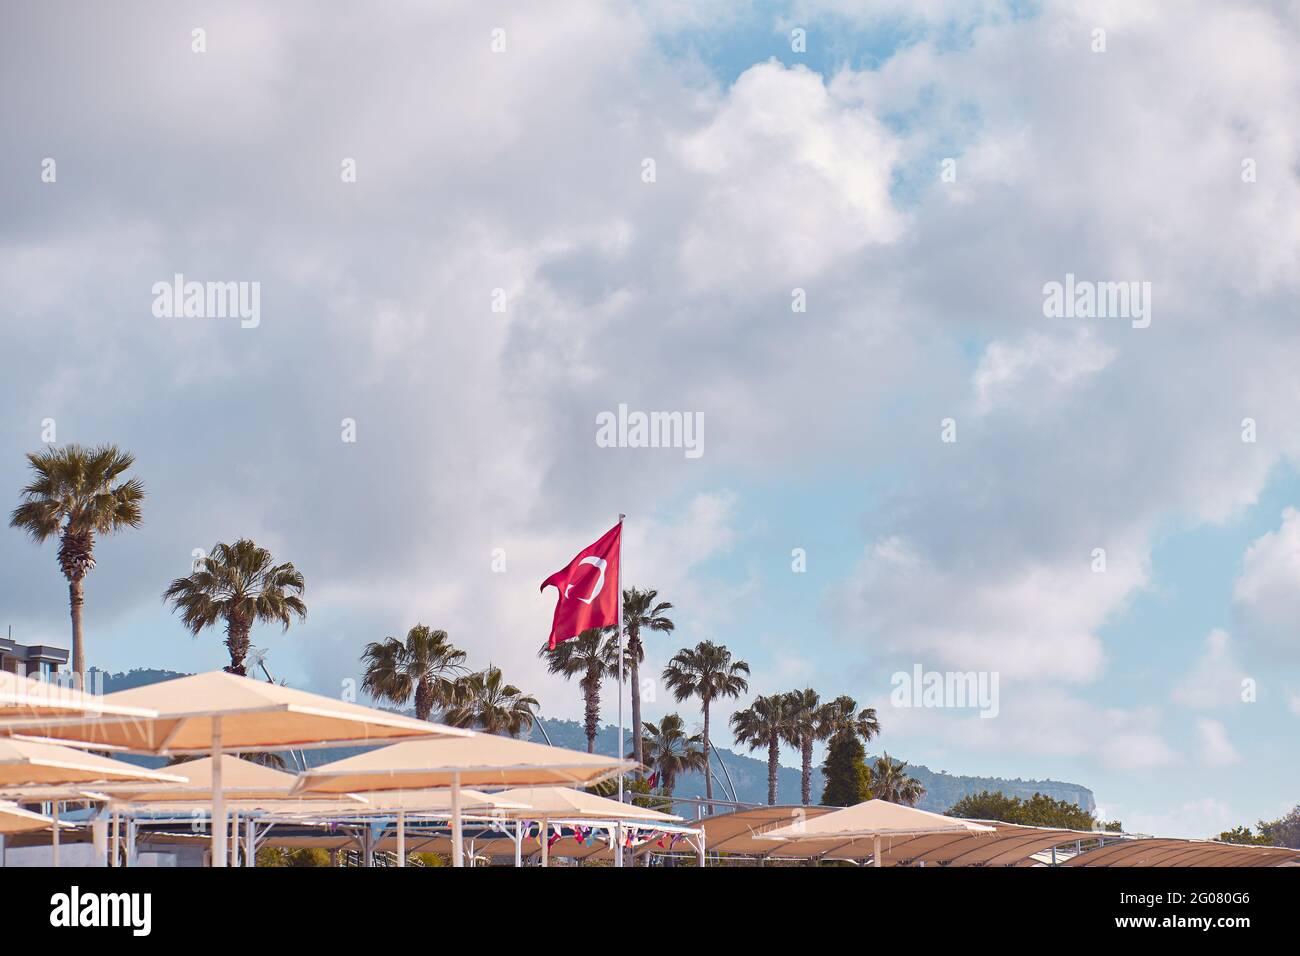 Vue sur la plage turque sur le drapeau de la turquie, parasols, temps ensoleillé. Voyage Turquie concept de fond. Copier l'espace. Banque D'Images